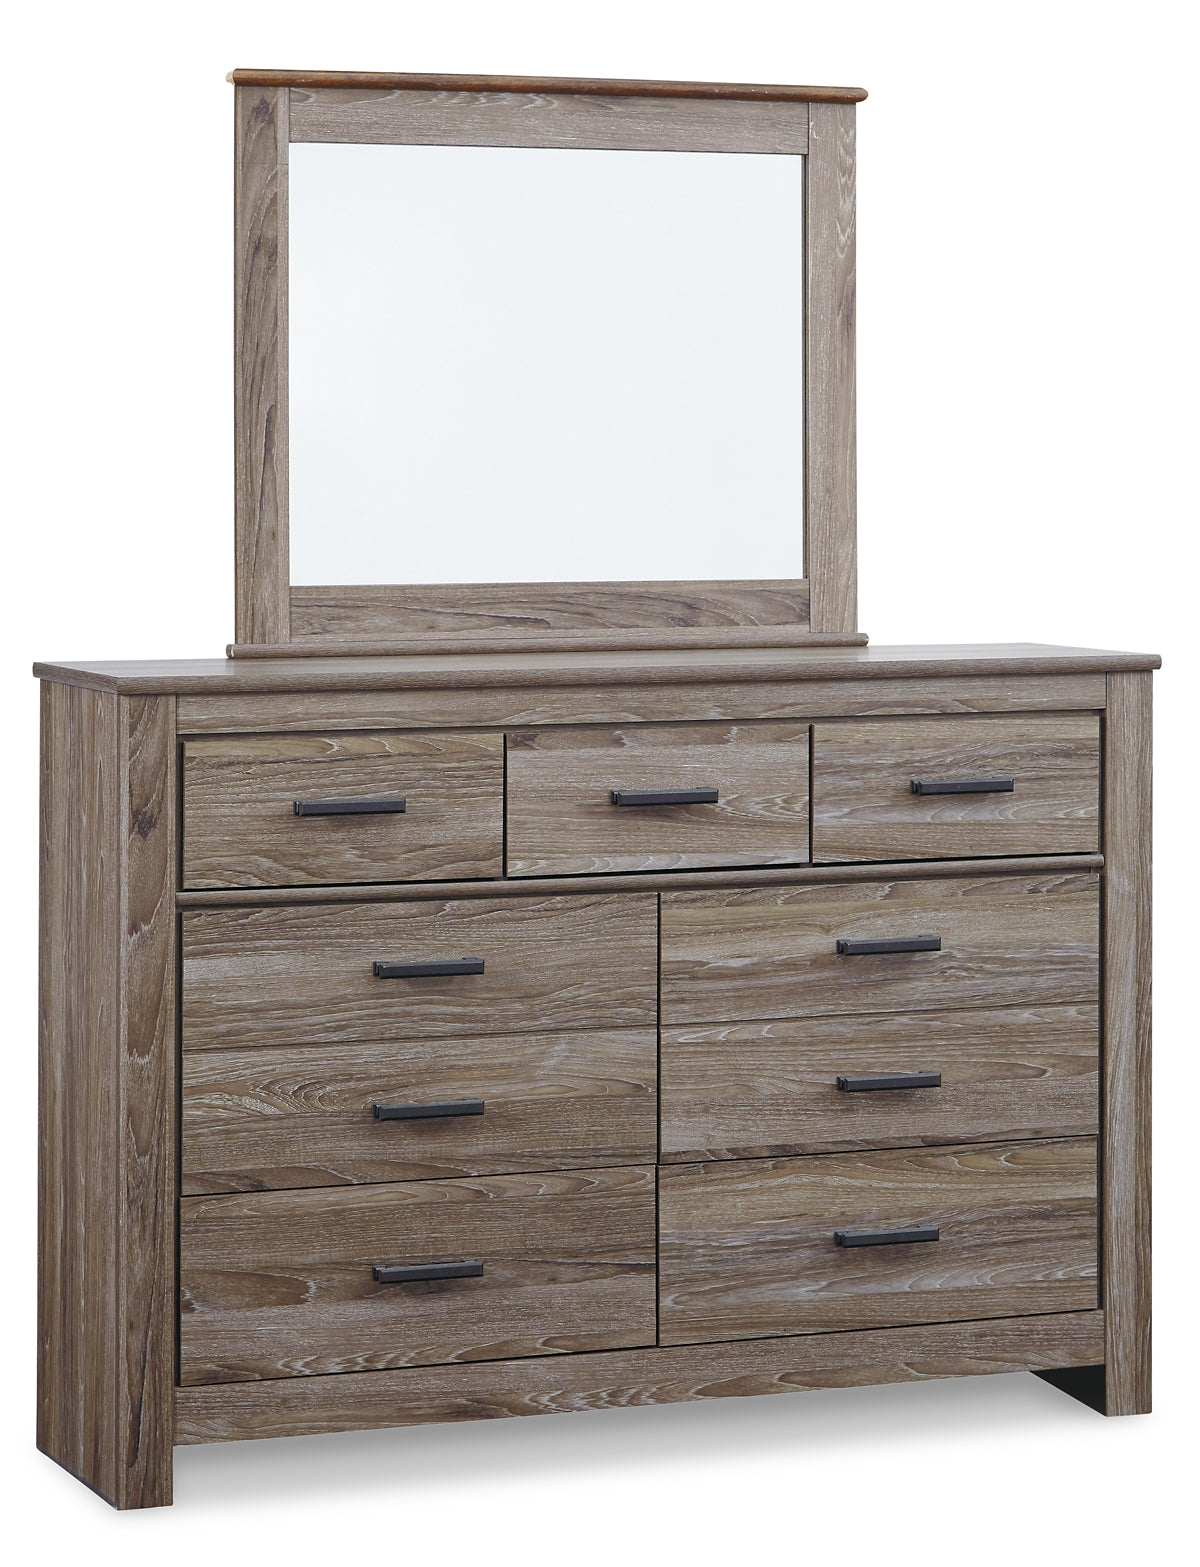 Zelen Queen Panel Bed with Mirrored Dresser, Chest and 2 Nightstands